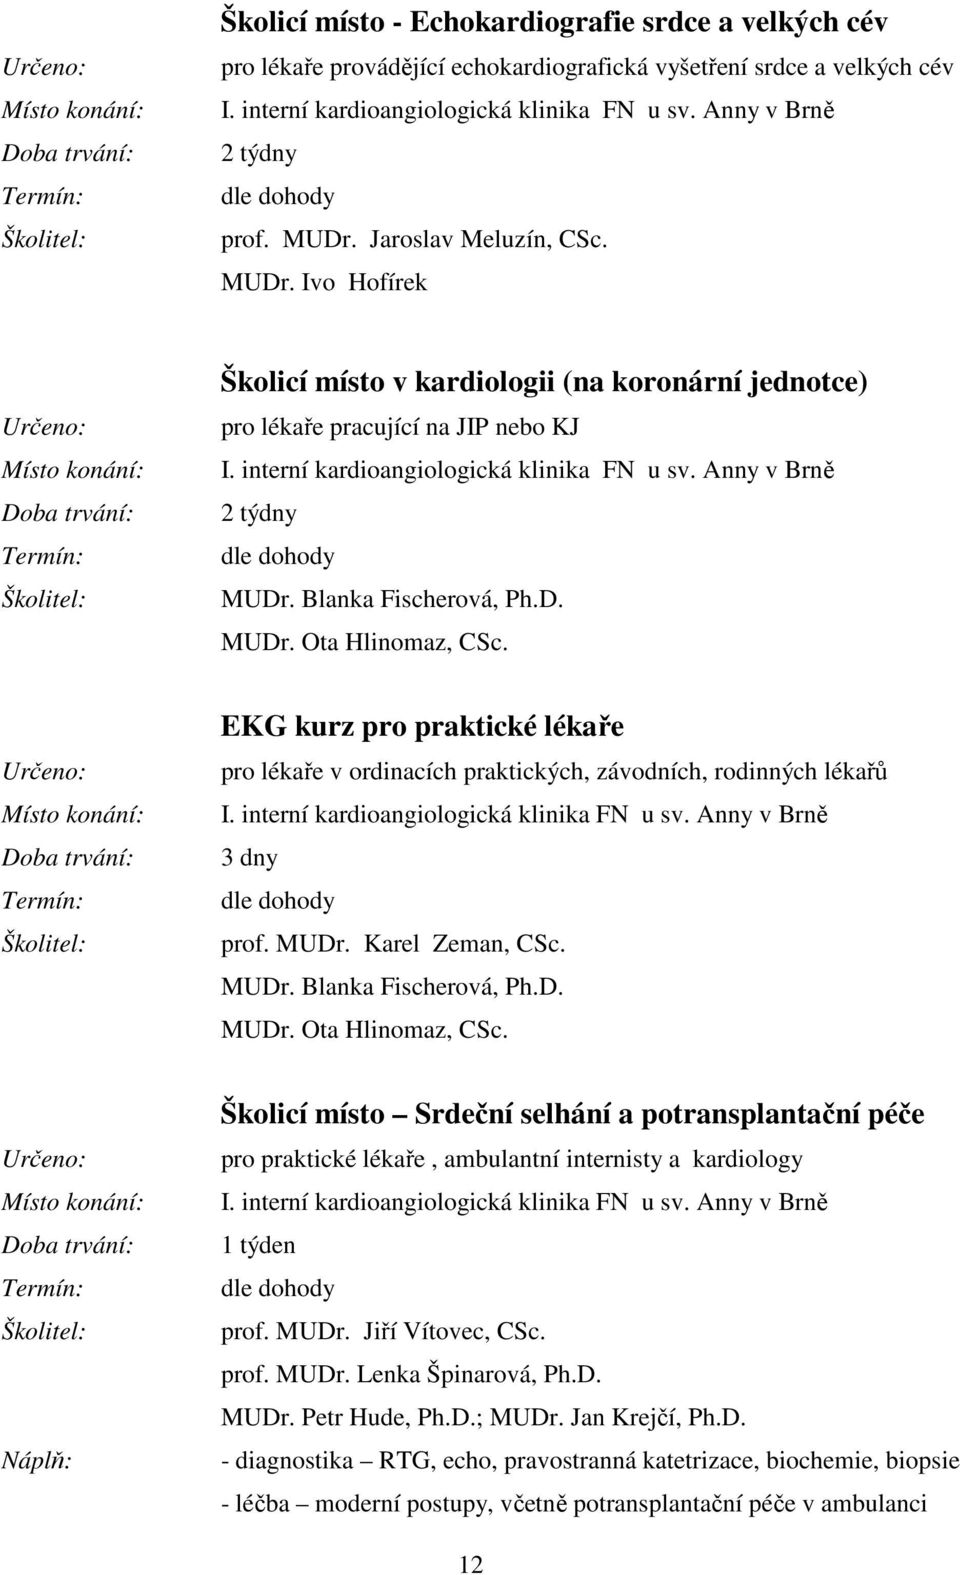 Anny v Brně 2 týdny MUDr. Blanka Fischerová, Ph.D. MUDr. Ota Hlinomaz, CSc. EKG kurz pro praktické lékaře pro lékaře v ordinacích praktických, závodních, rodinných lékařů I.